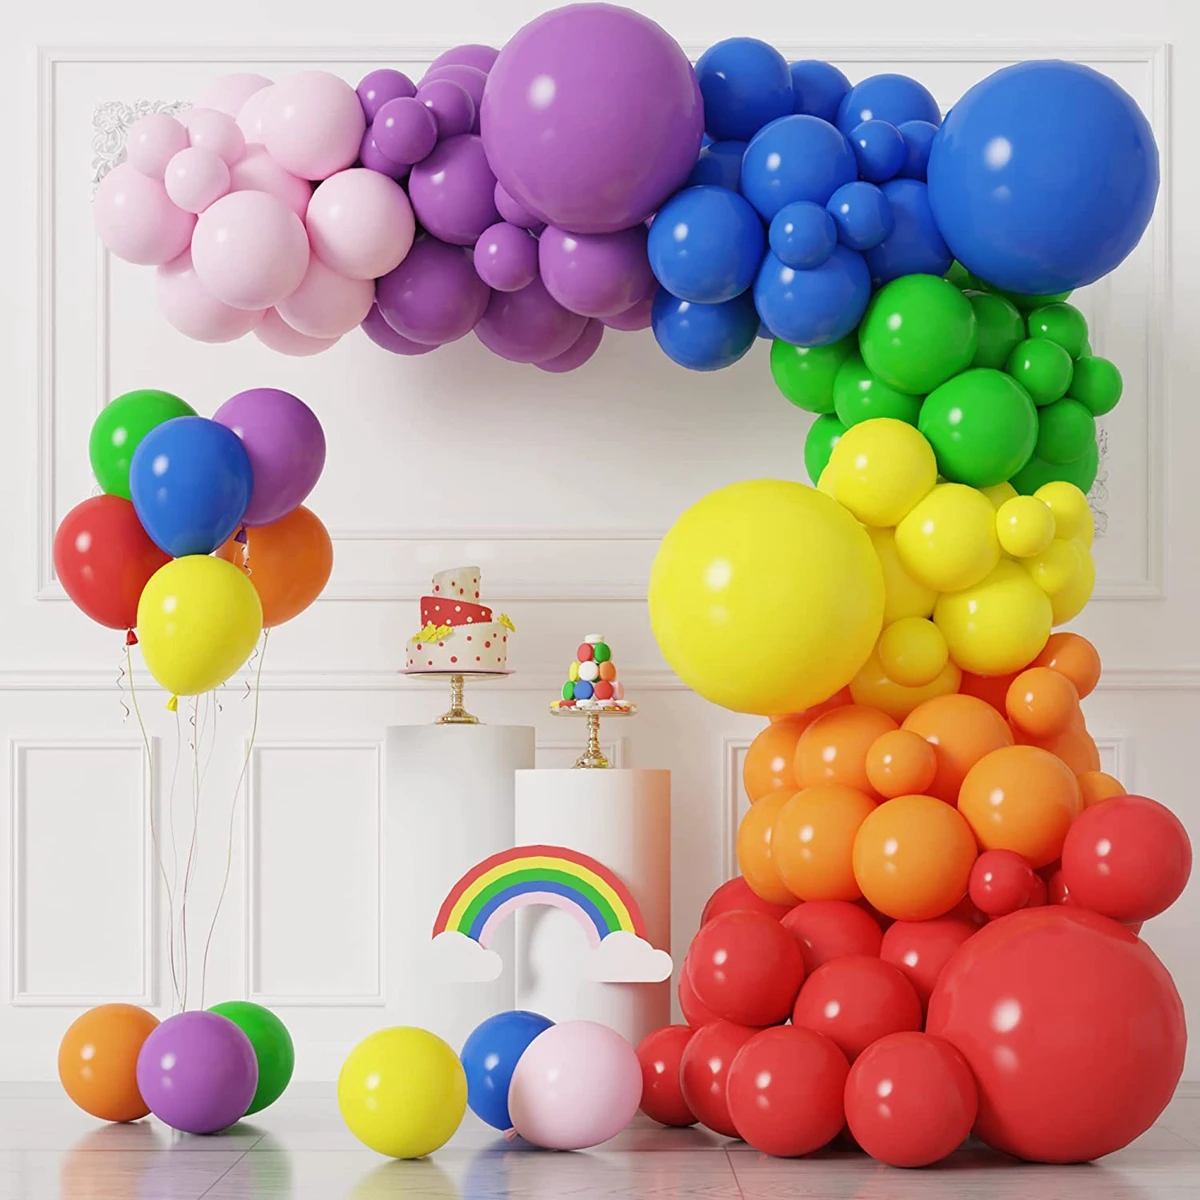 

Разноцветная Радужная гирлянда с воздушными шарами, разноцветное искусственное украшение, декор для свадьбы, дня рождения, детский праздник для будущей мамы